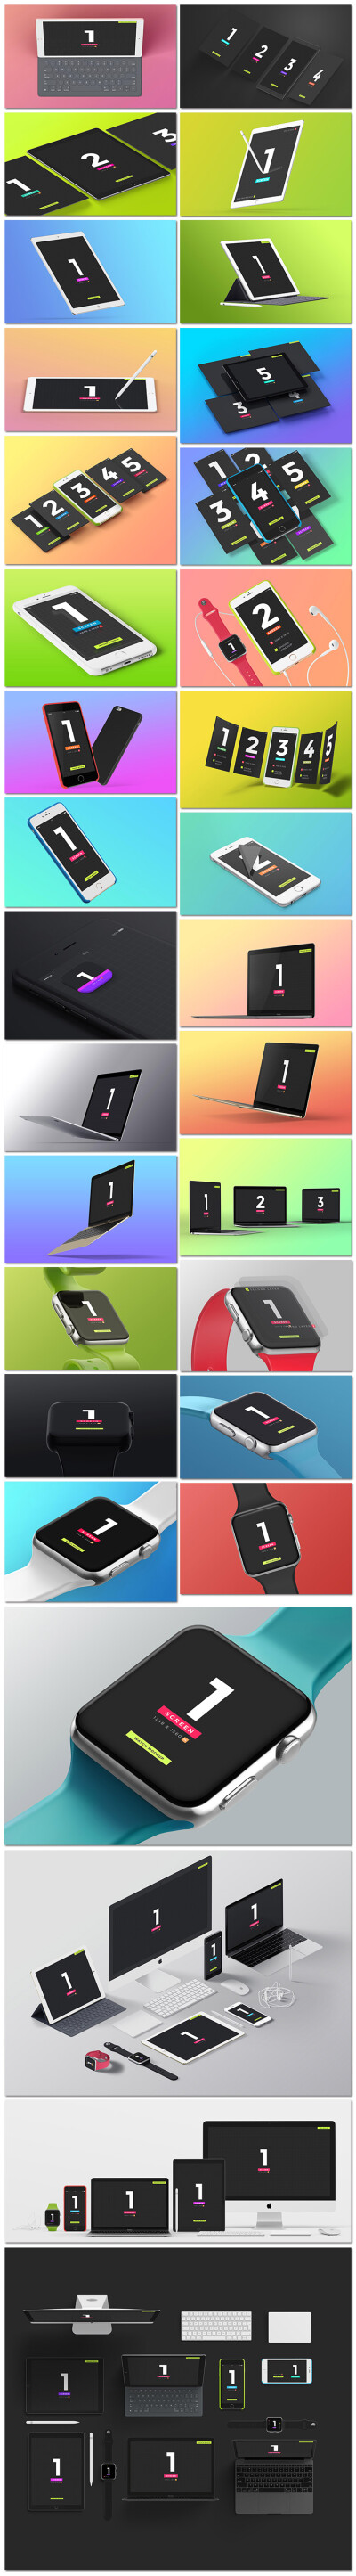 苹果iphone和ipad和macbook和watch模型展示样机模板素材设计